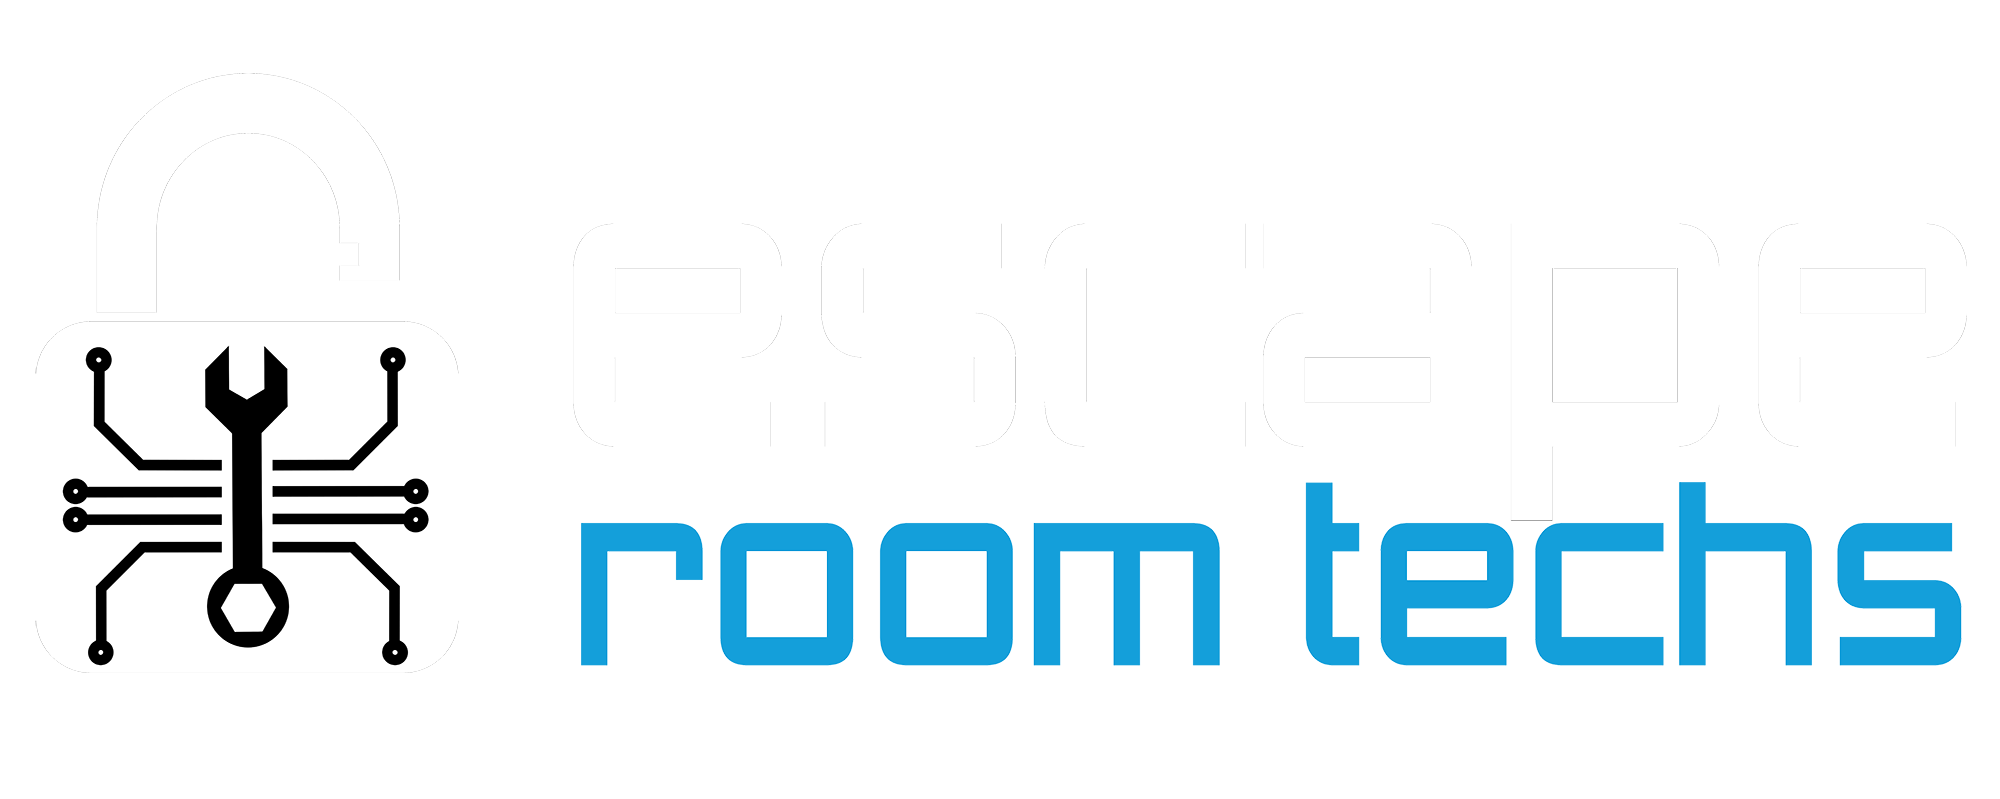 Escape Room Techs logo